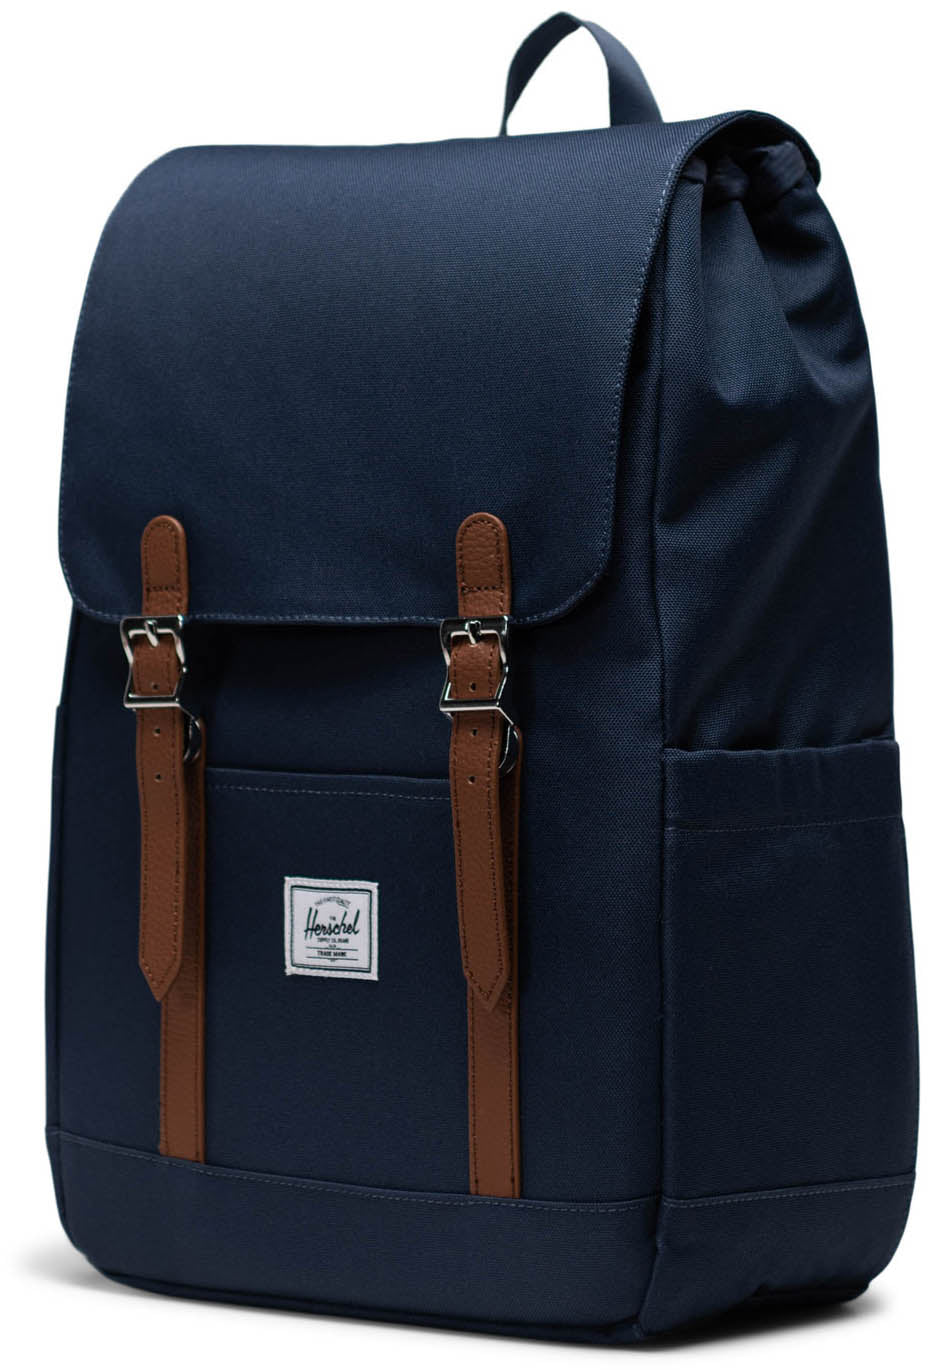 Herschel Retreat Small Backpack - Navy